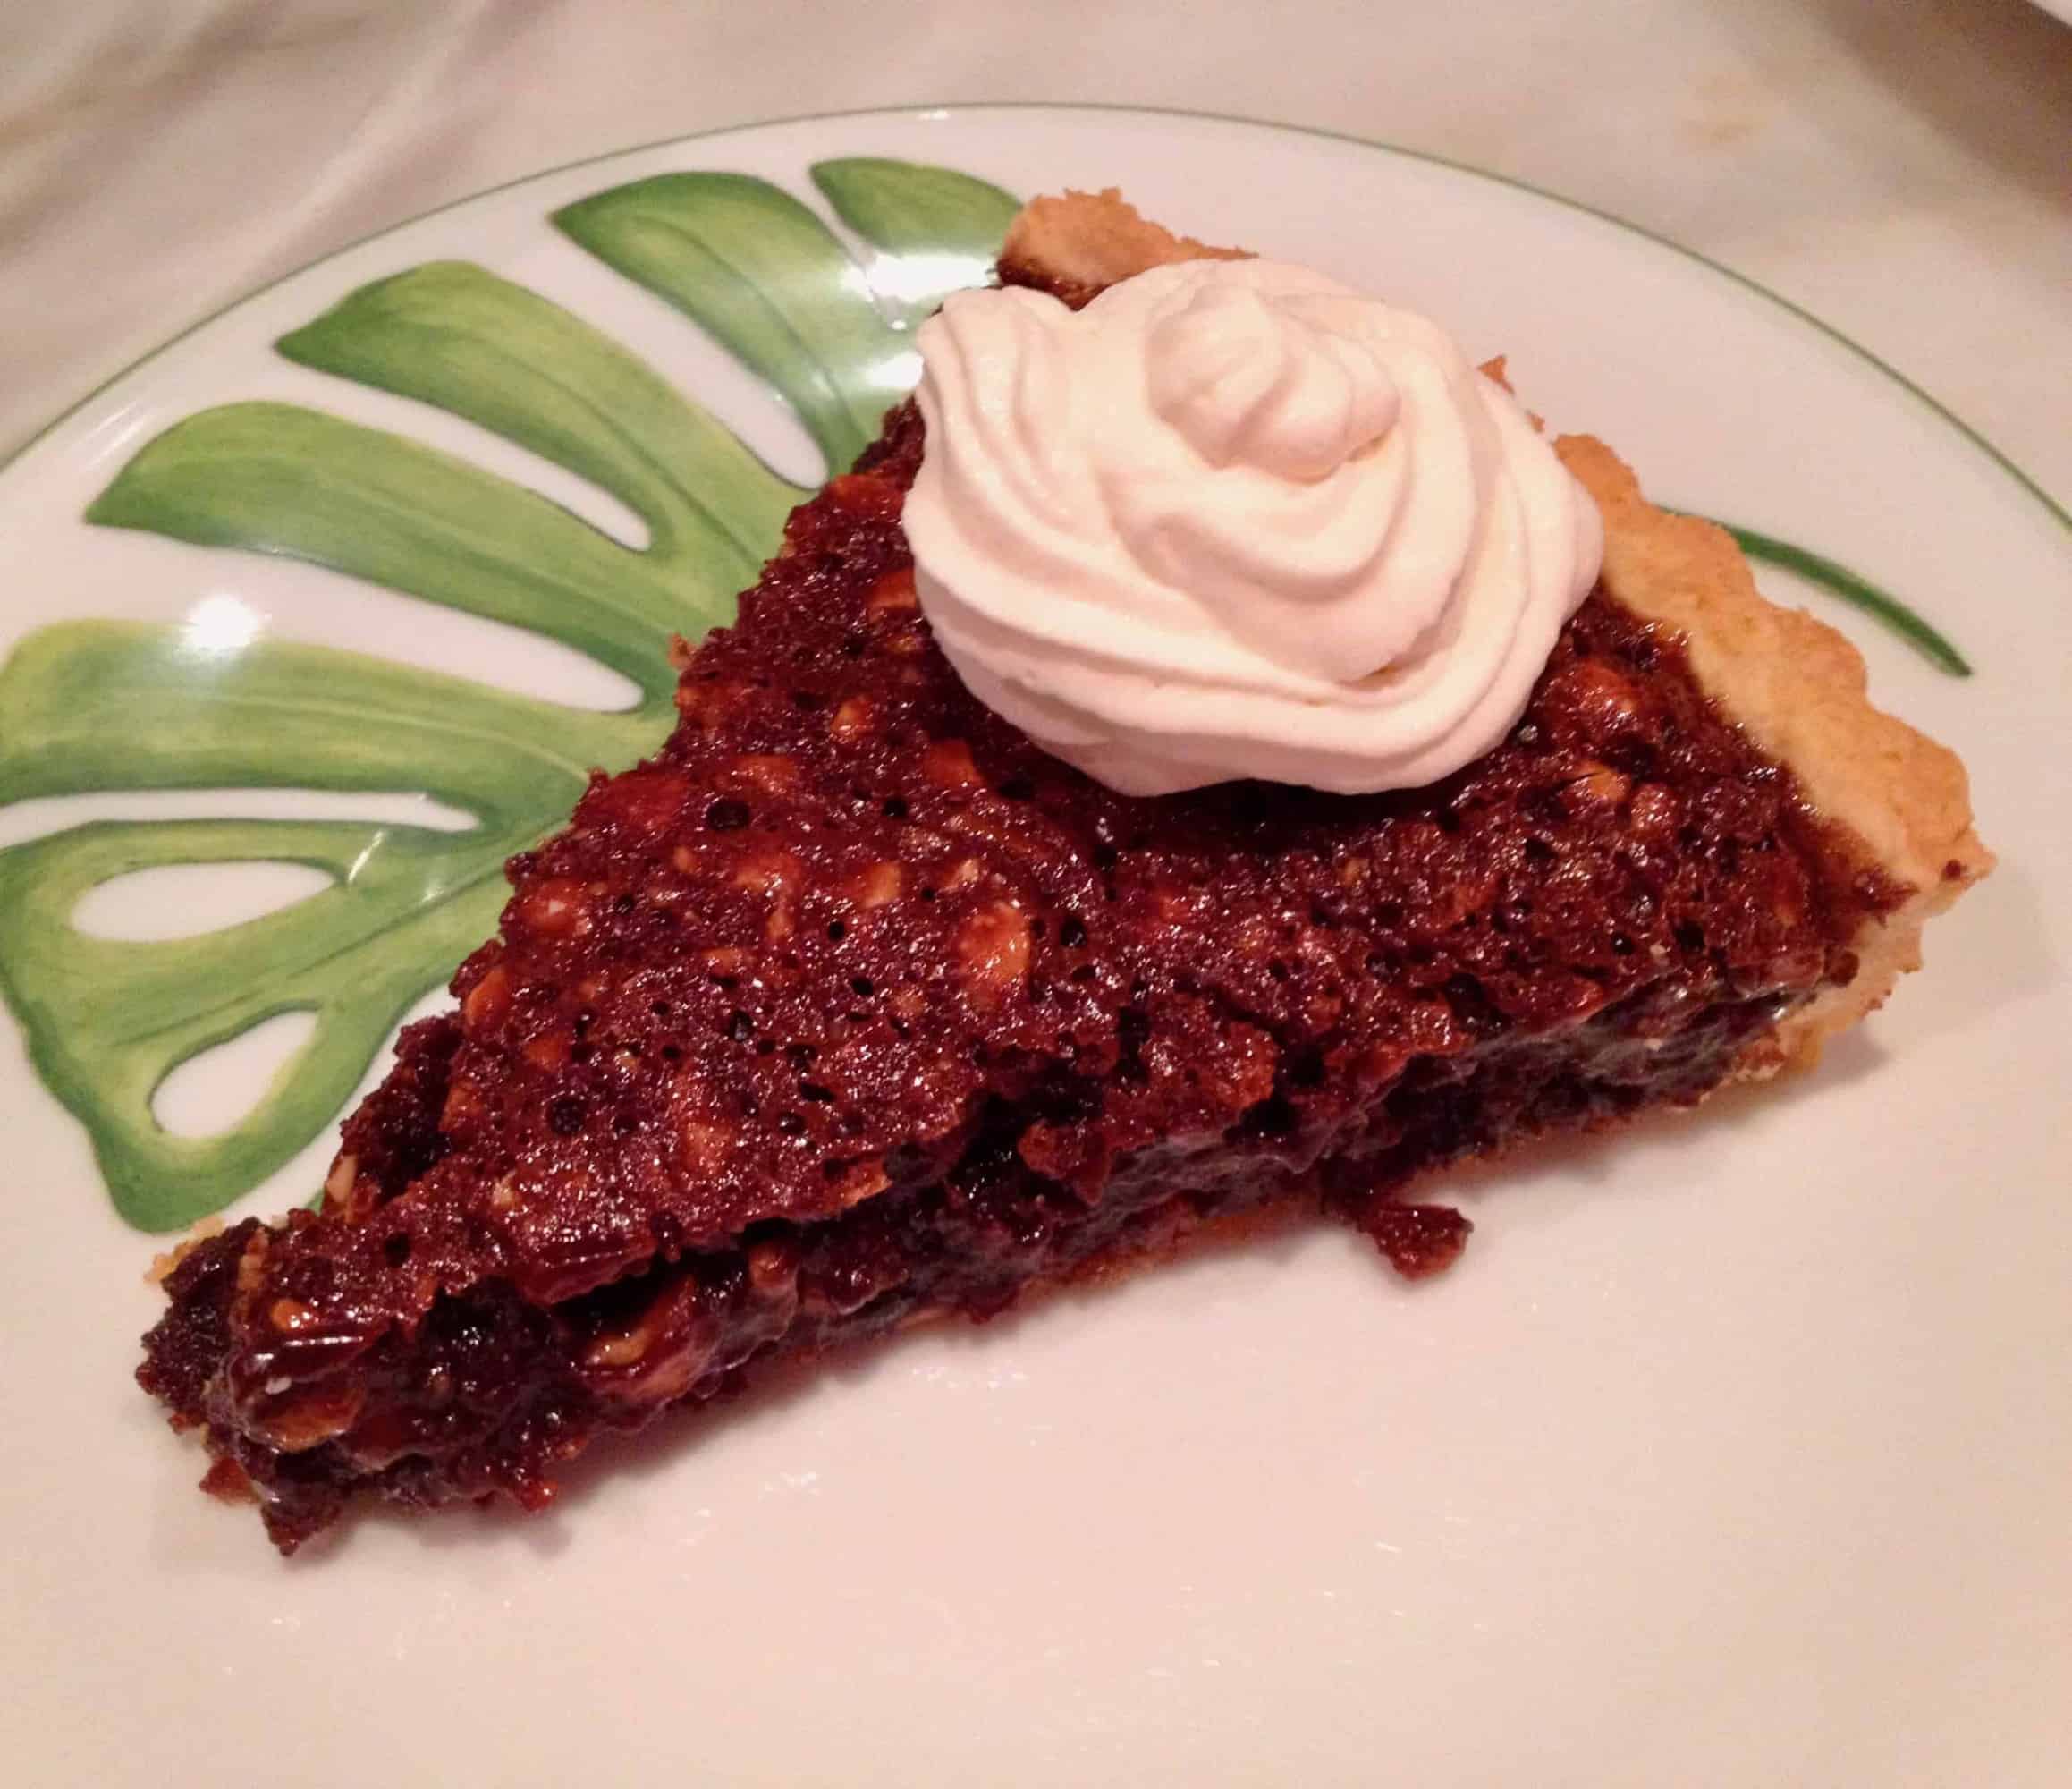 Thanksgiving Way Out West, Dessert Round: Nick Maglieri’s Chocolate Hazelnut Tart